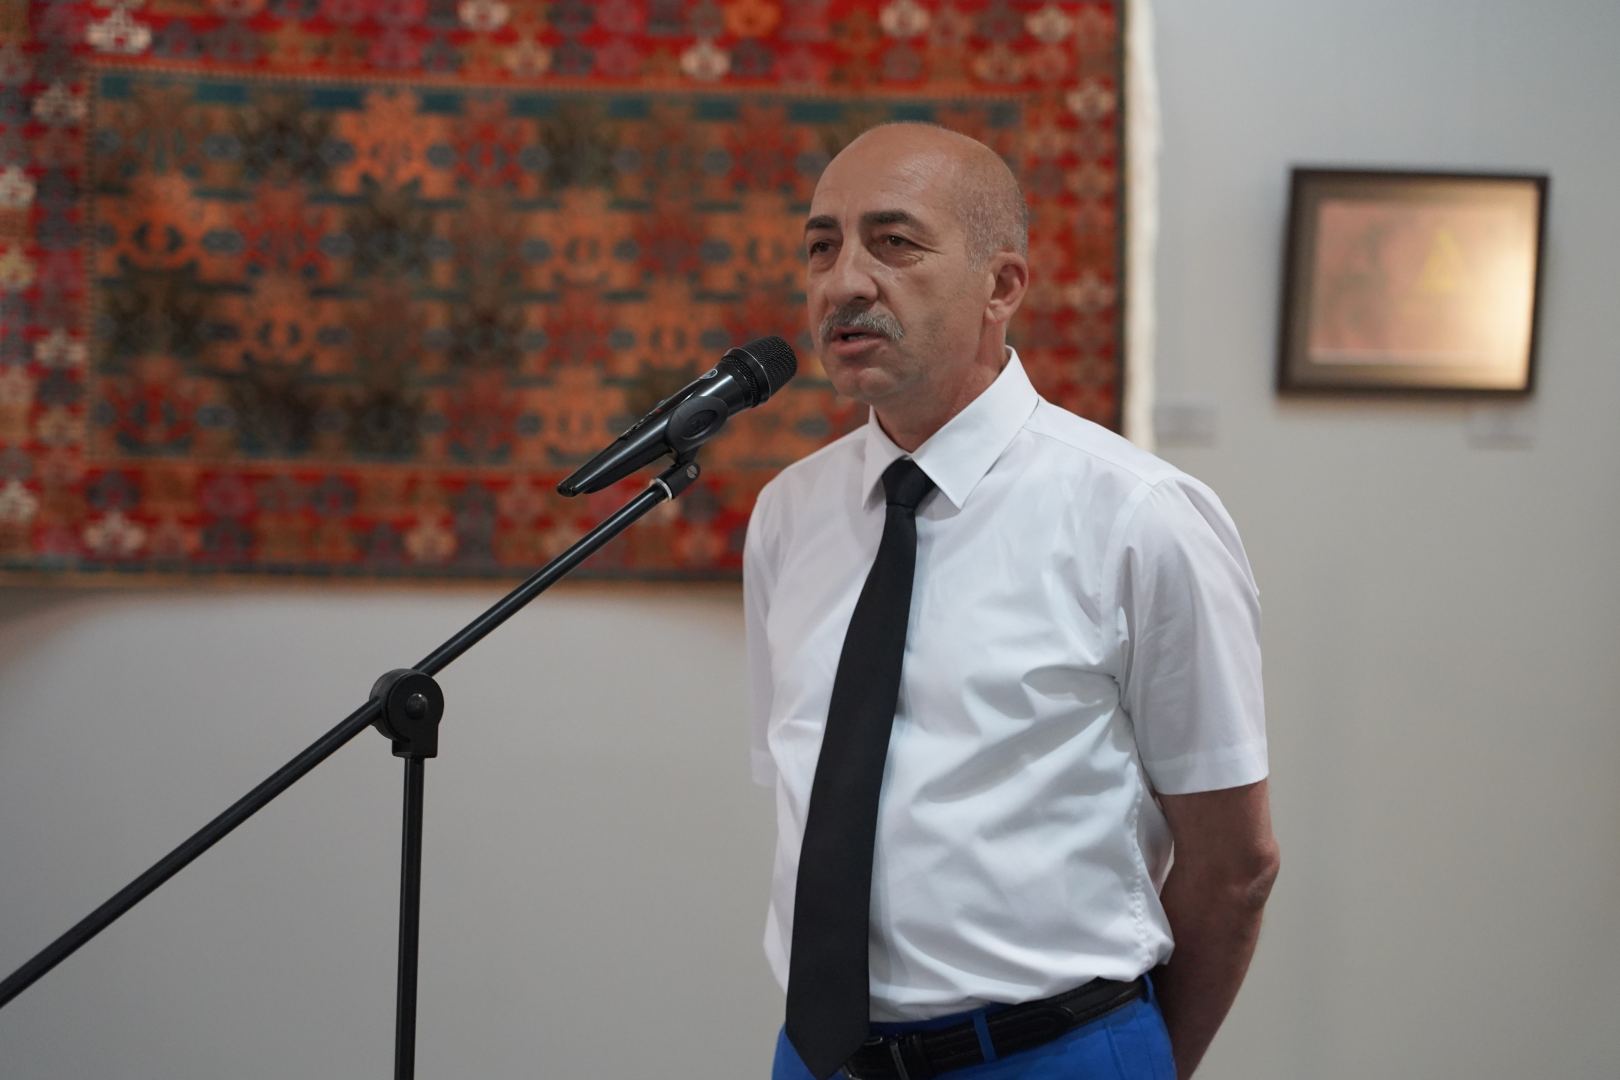 Потрясающий мир азербайджанских ковров в России, или Бакинское детство министра культуры Татарстана  (ФОТО)